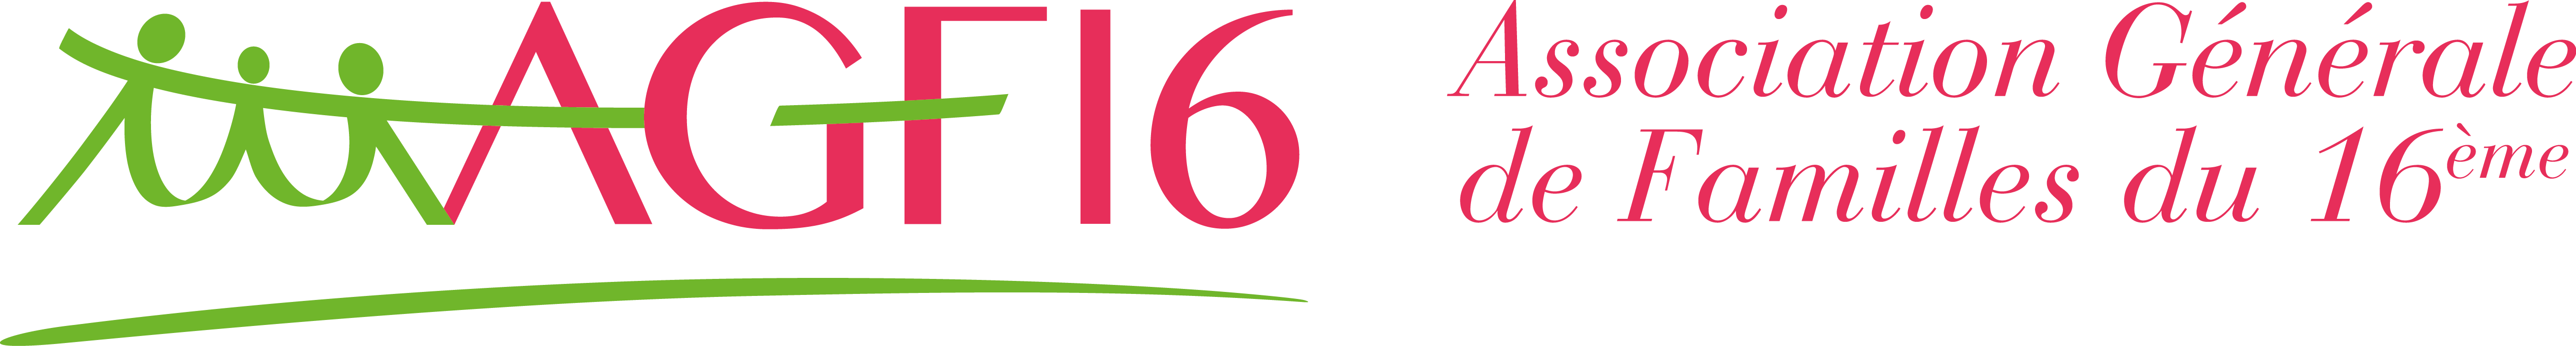 AGF16 – Association Générale de Familles du 16ème Arrondissement